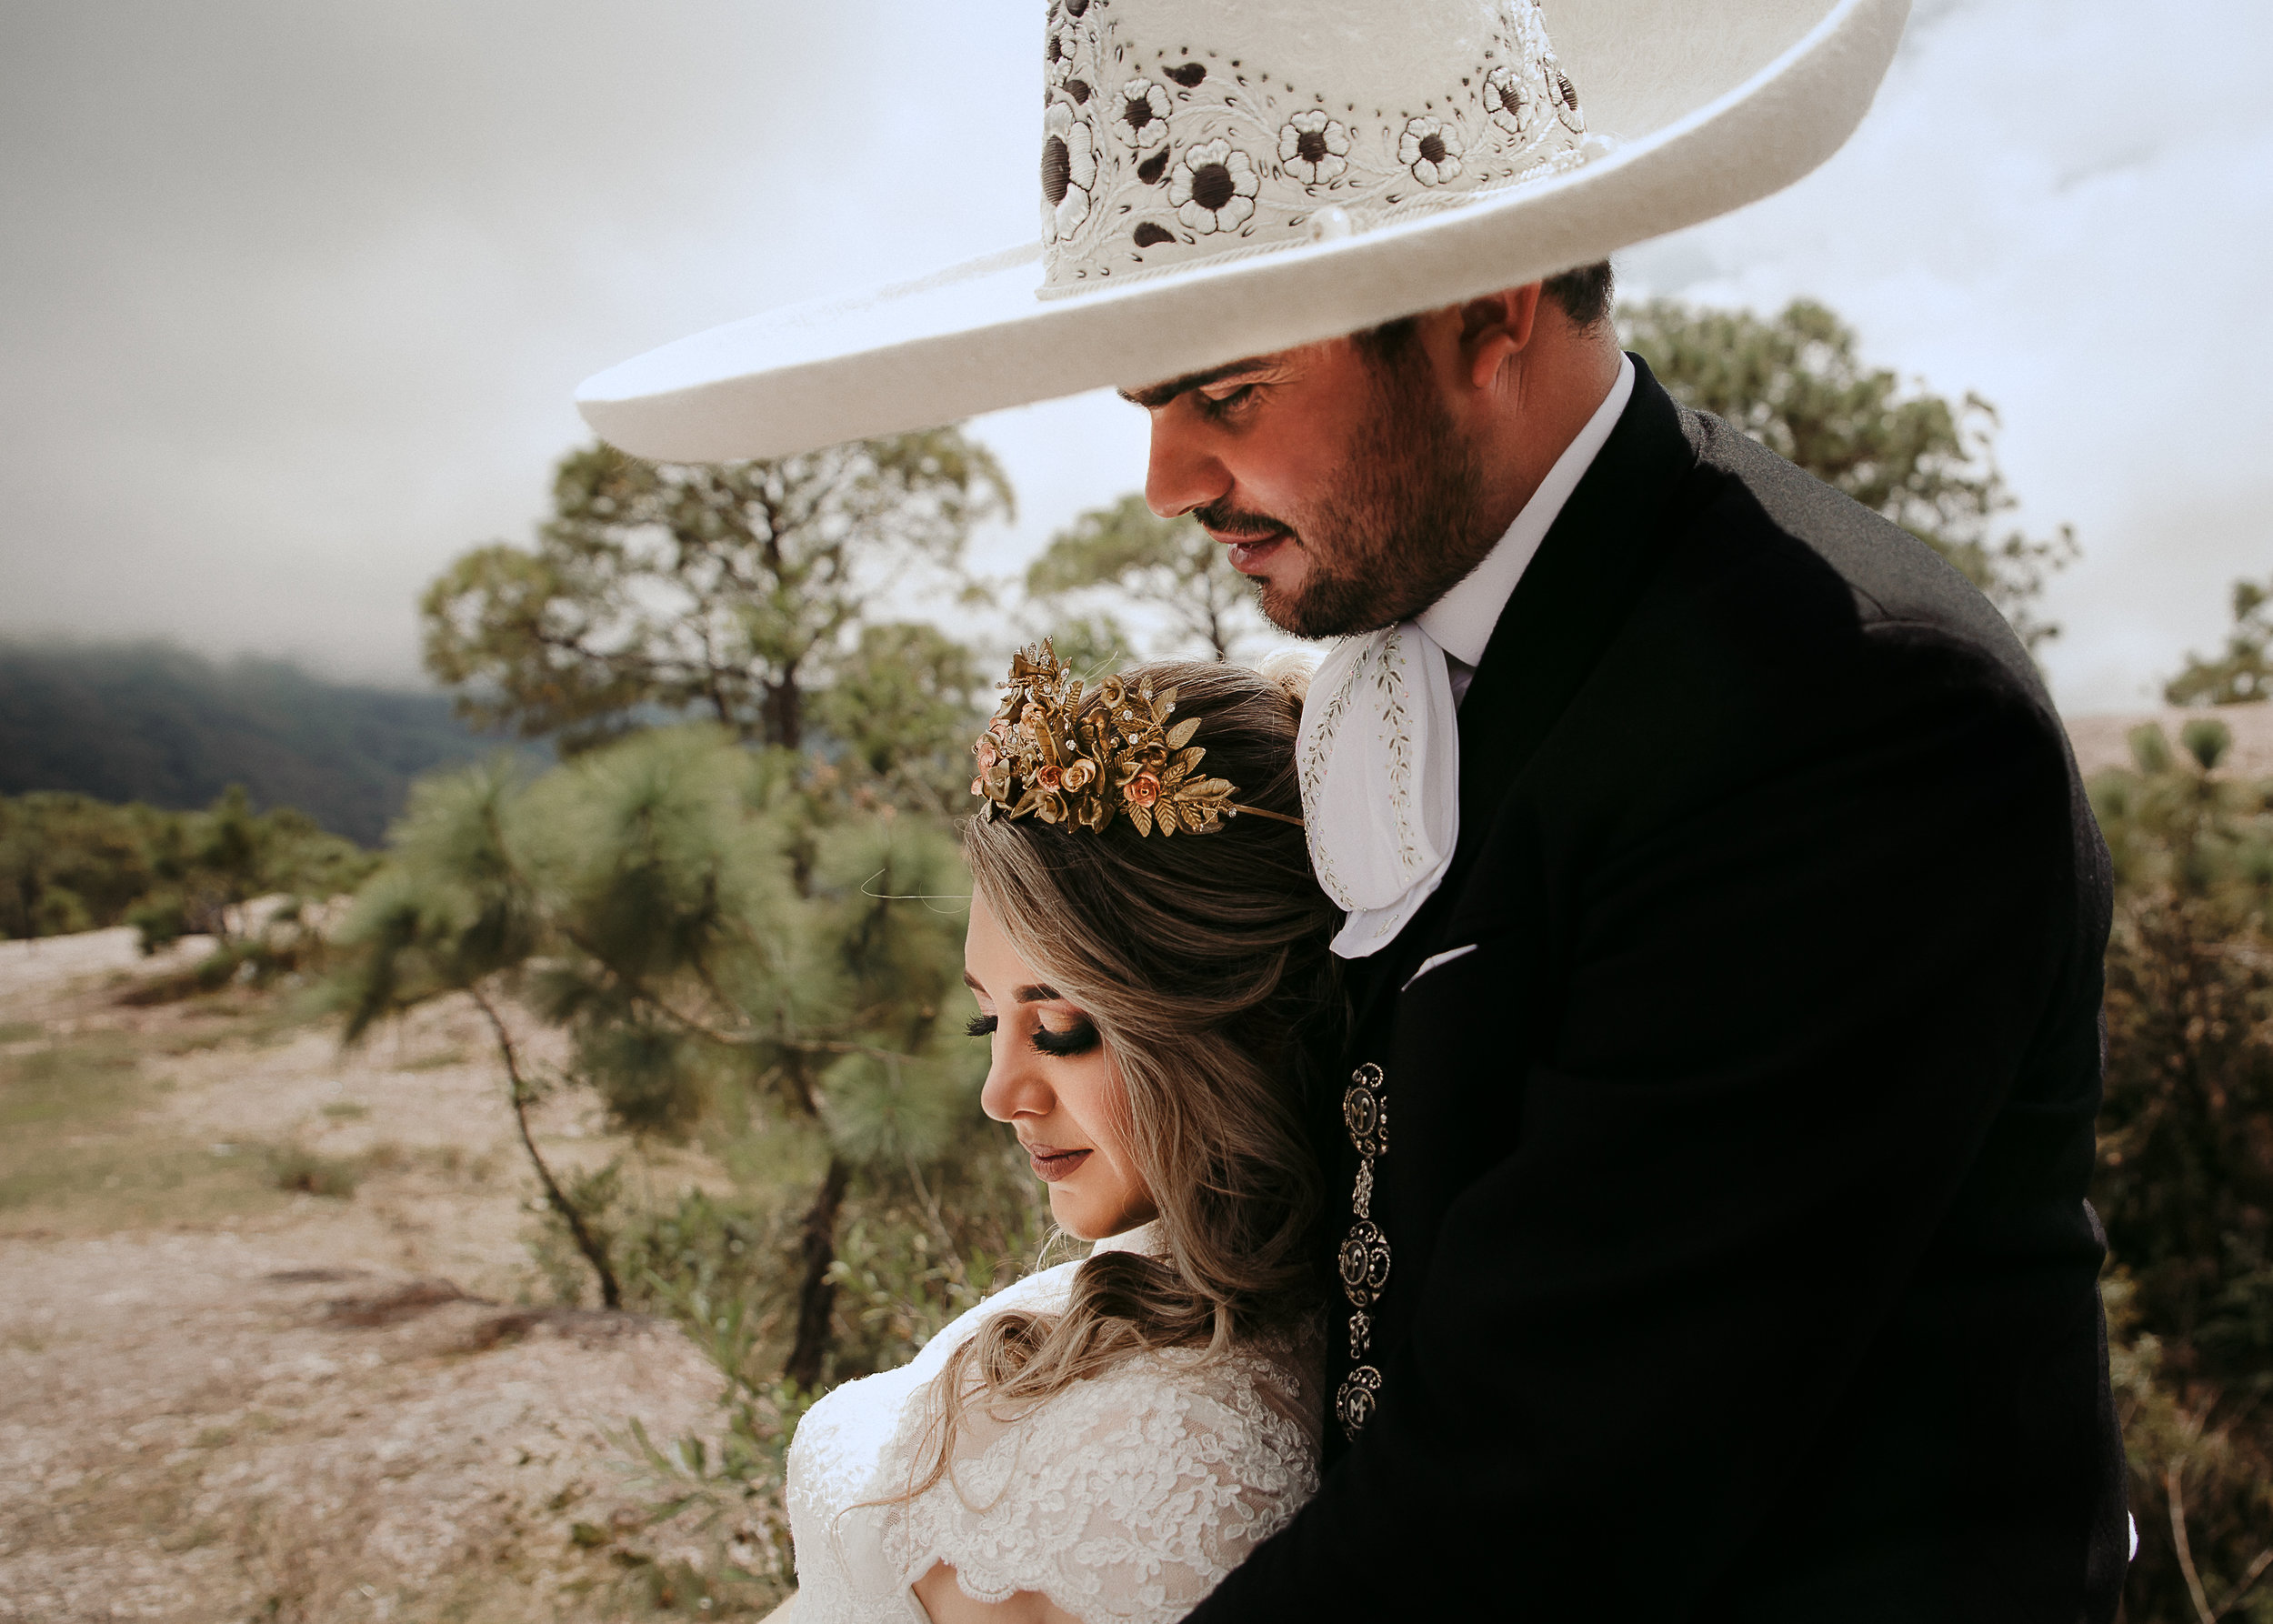 Fotografo-de-bodas-destino-Mexico-wedding-destination-photographer-san-miguel-de-allende-gto-guanajuato-queretaro-boho-bohemian-bohemio-chic-wedding-editorial-wedding-carotida-photographer